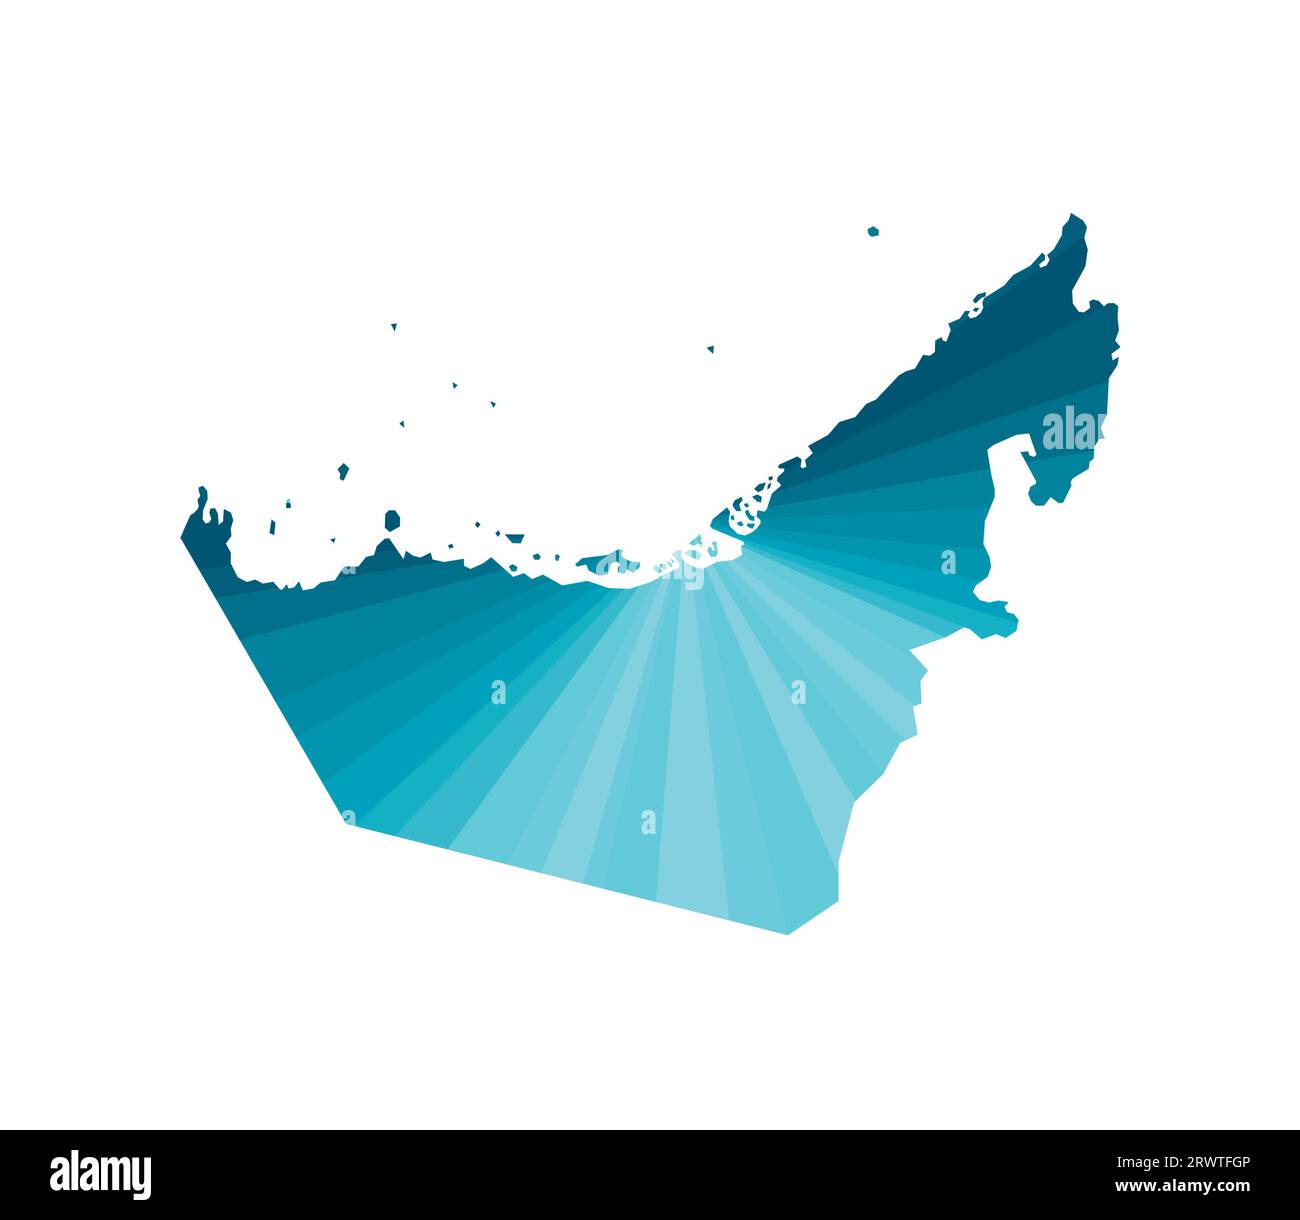 Icône d'illustration isolée vectorielle avec silhouette bleue simplifiée de la carte des Émirats arabes Unis (Émirats arabes Unis). Style géométrique polygonal. Fond blanc. Illustration de Vecteur